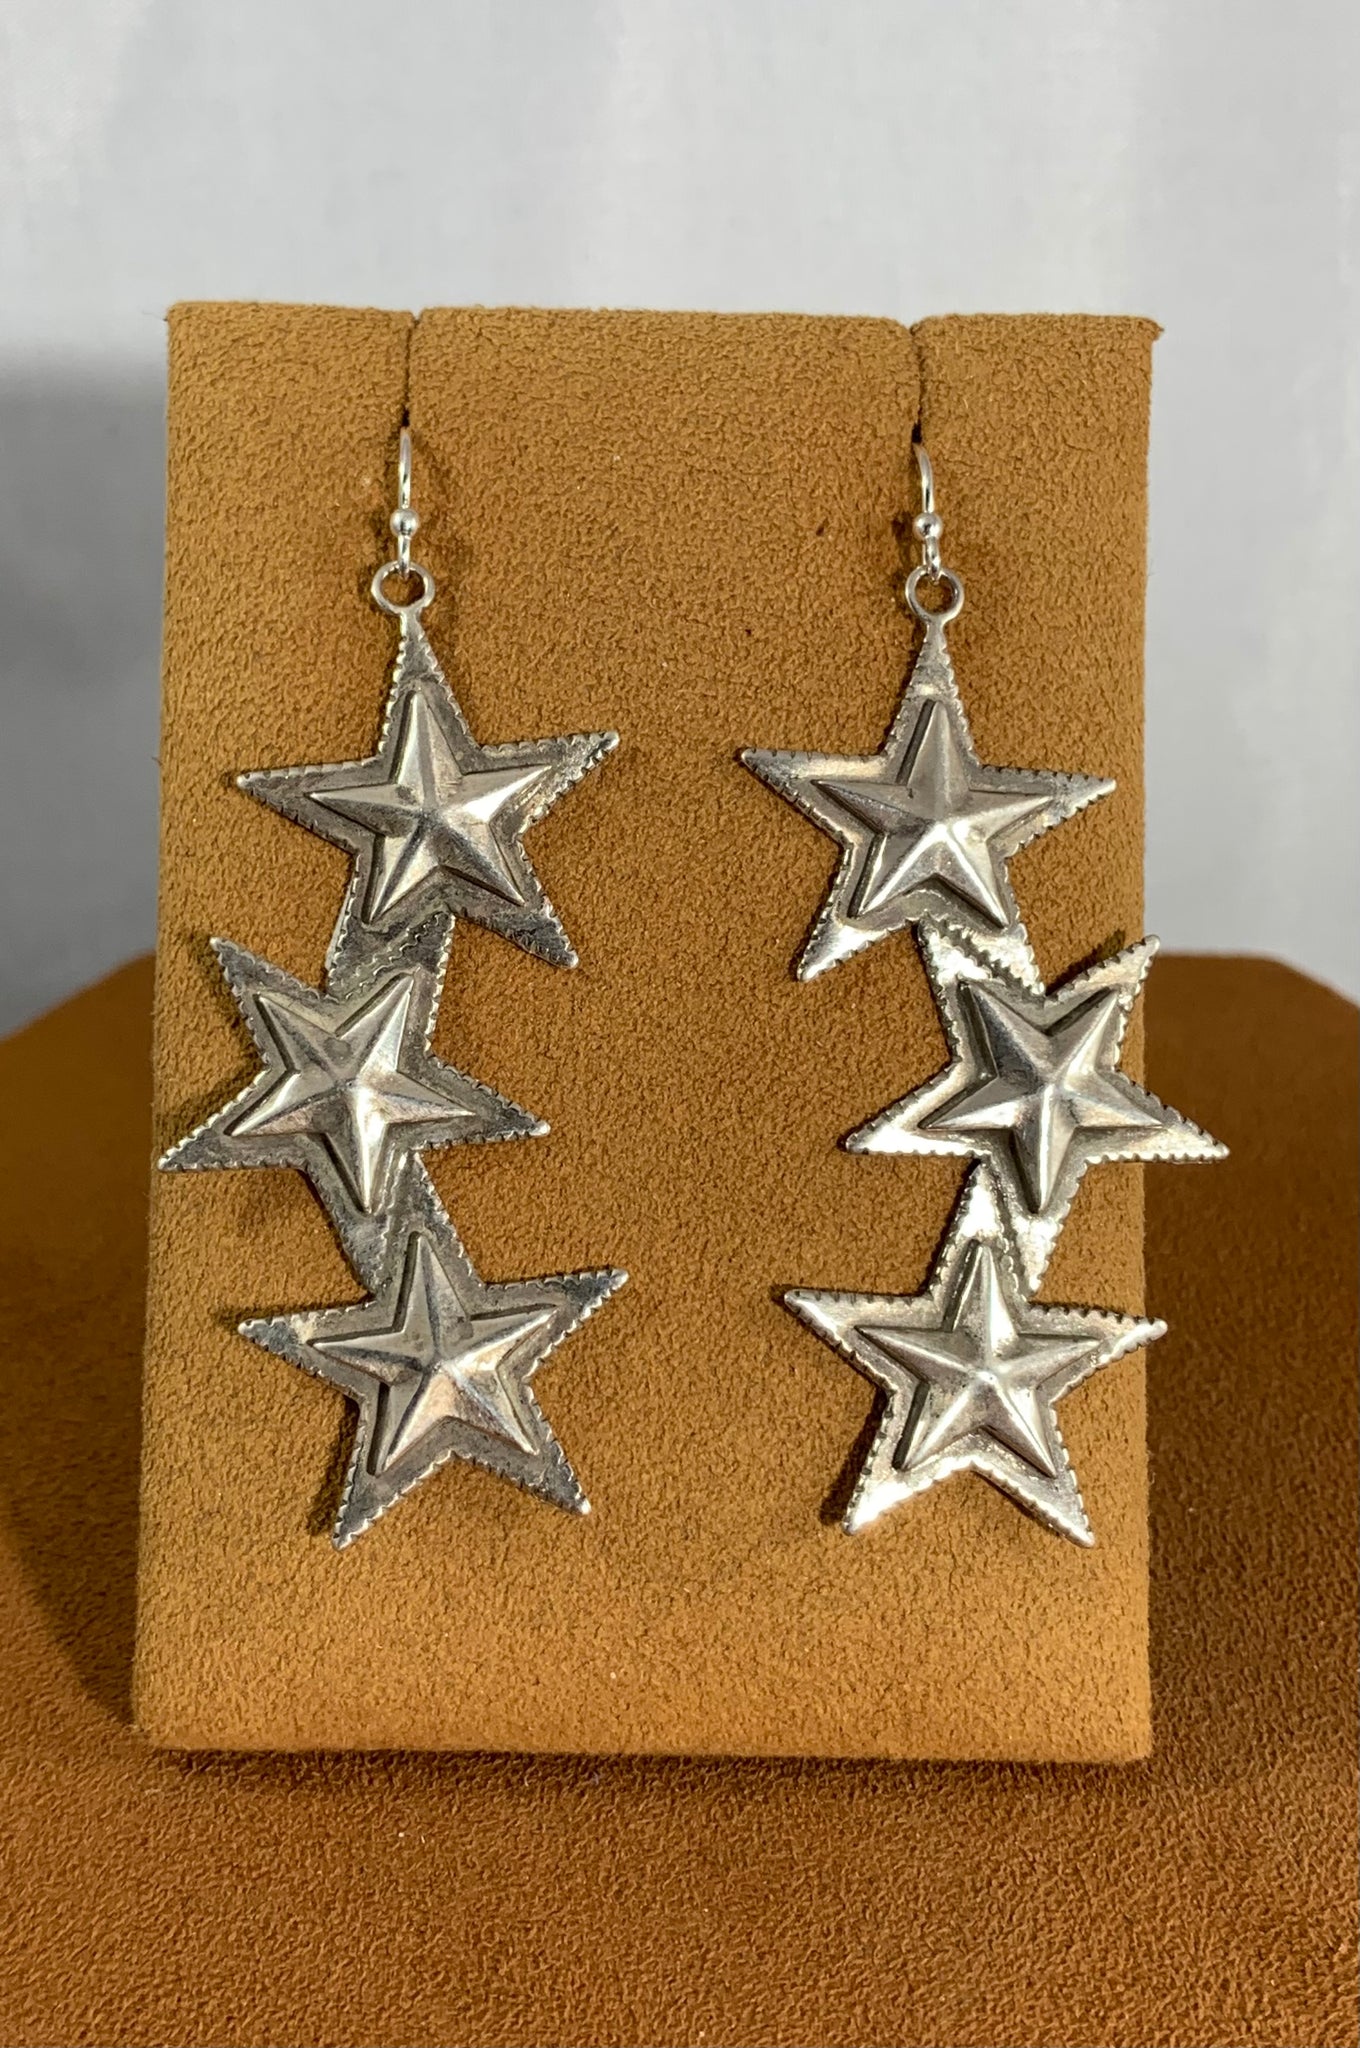 Triple Star Earrings by Gregory Segura